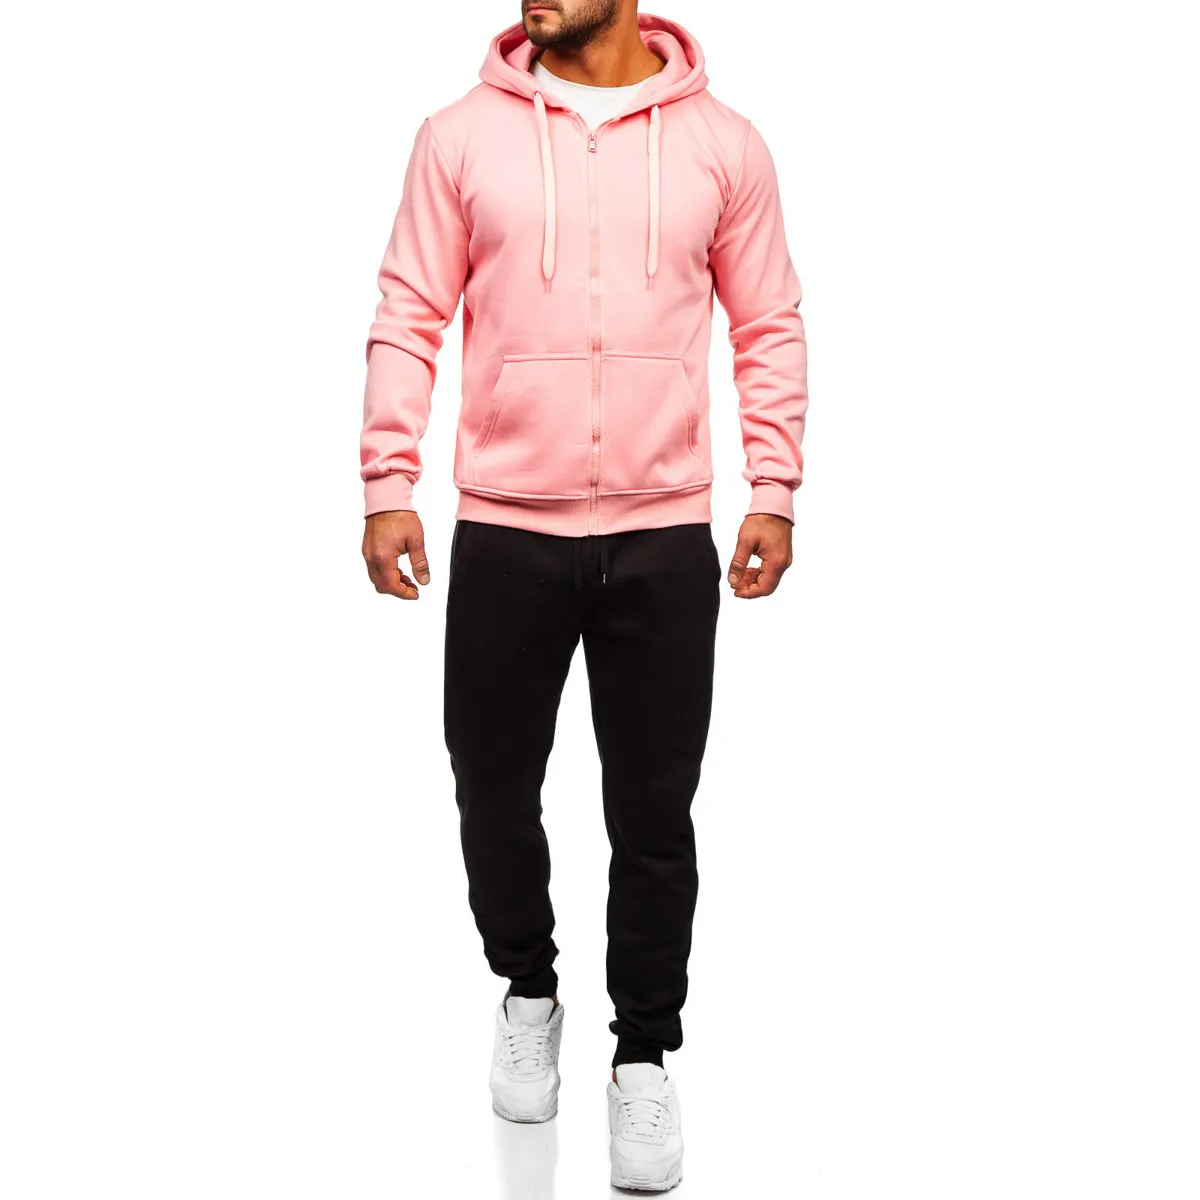 Tuta da uomo con Zip colore rosa chiaro, crea le tue comode tute con cerniera Street Wear di buona vendita